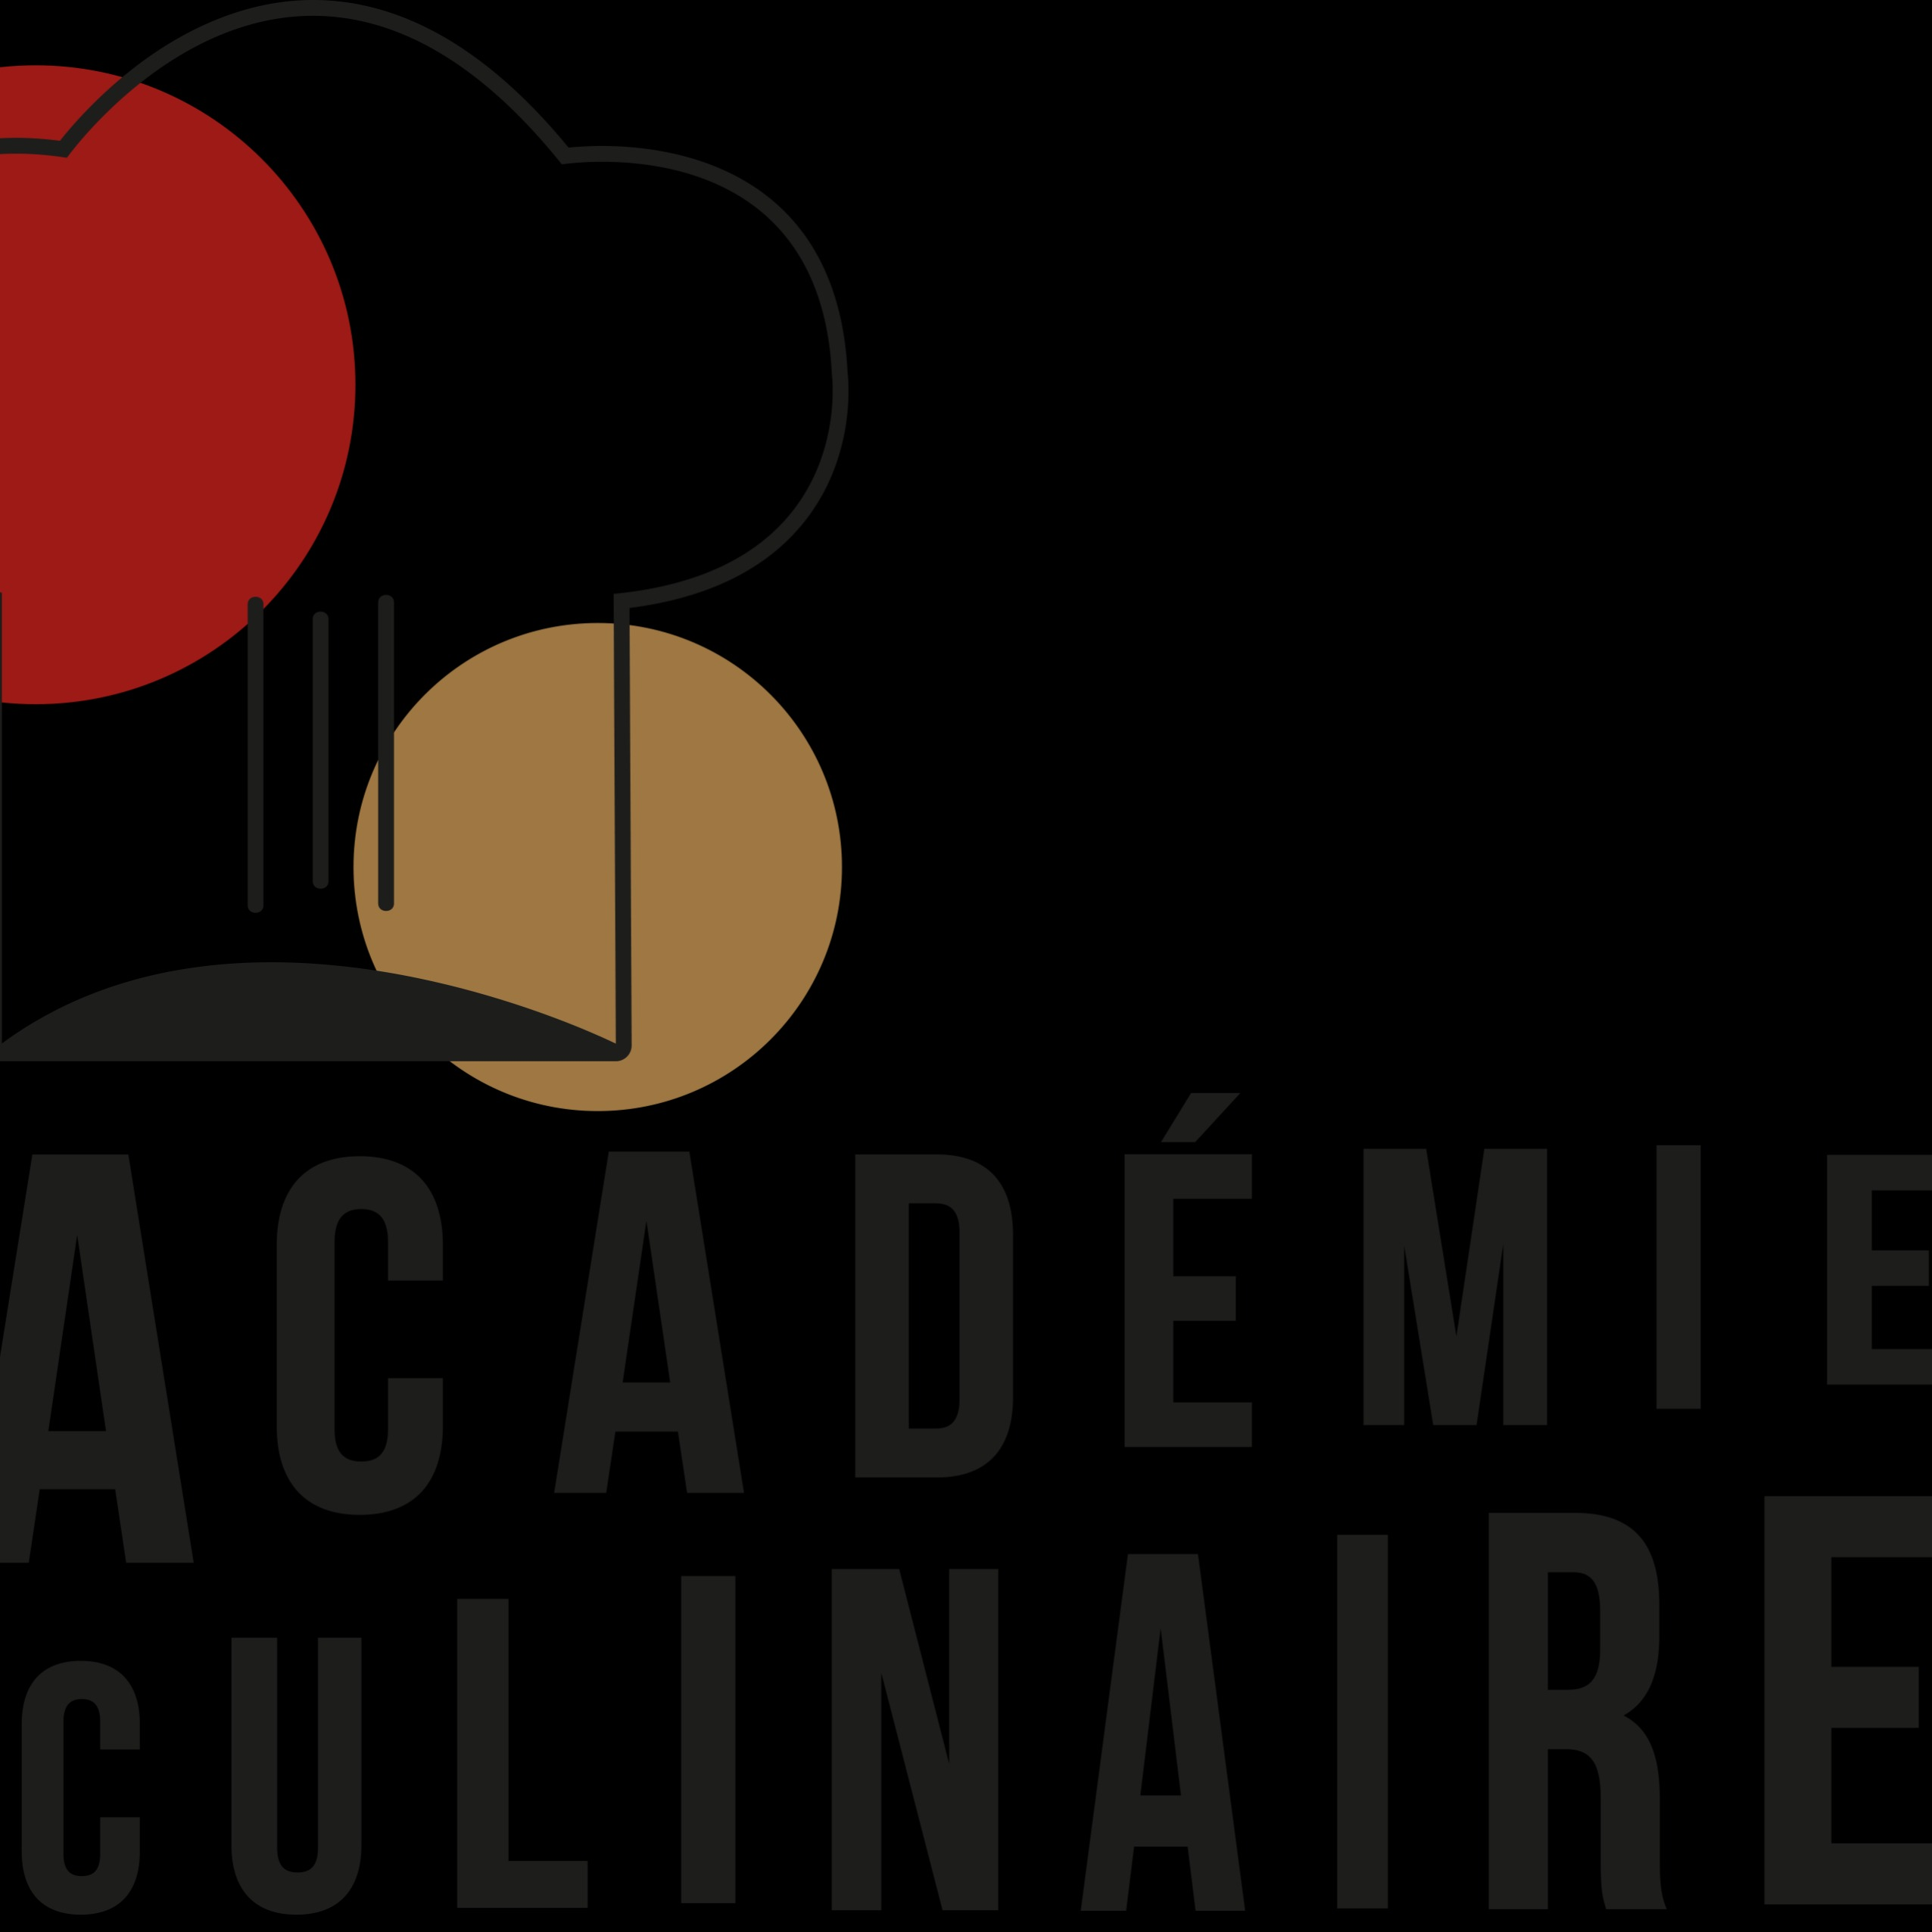 Esccom Académie Culinaire - Culinary School - Nice - 04 93 85 16 67 France | ShowMeLocal.com